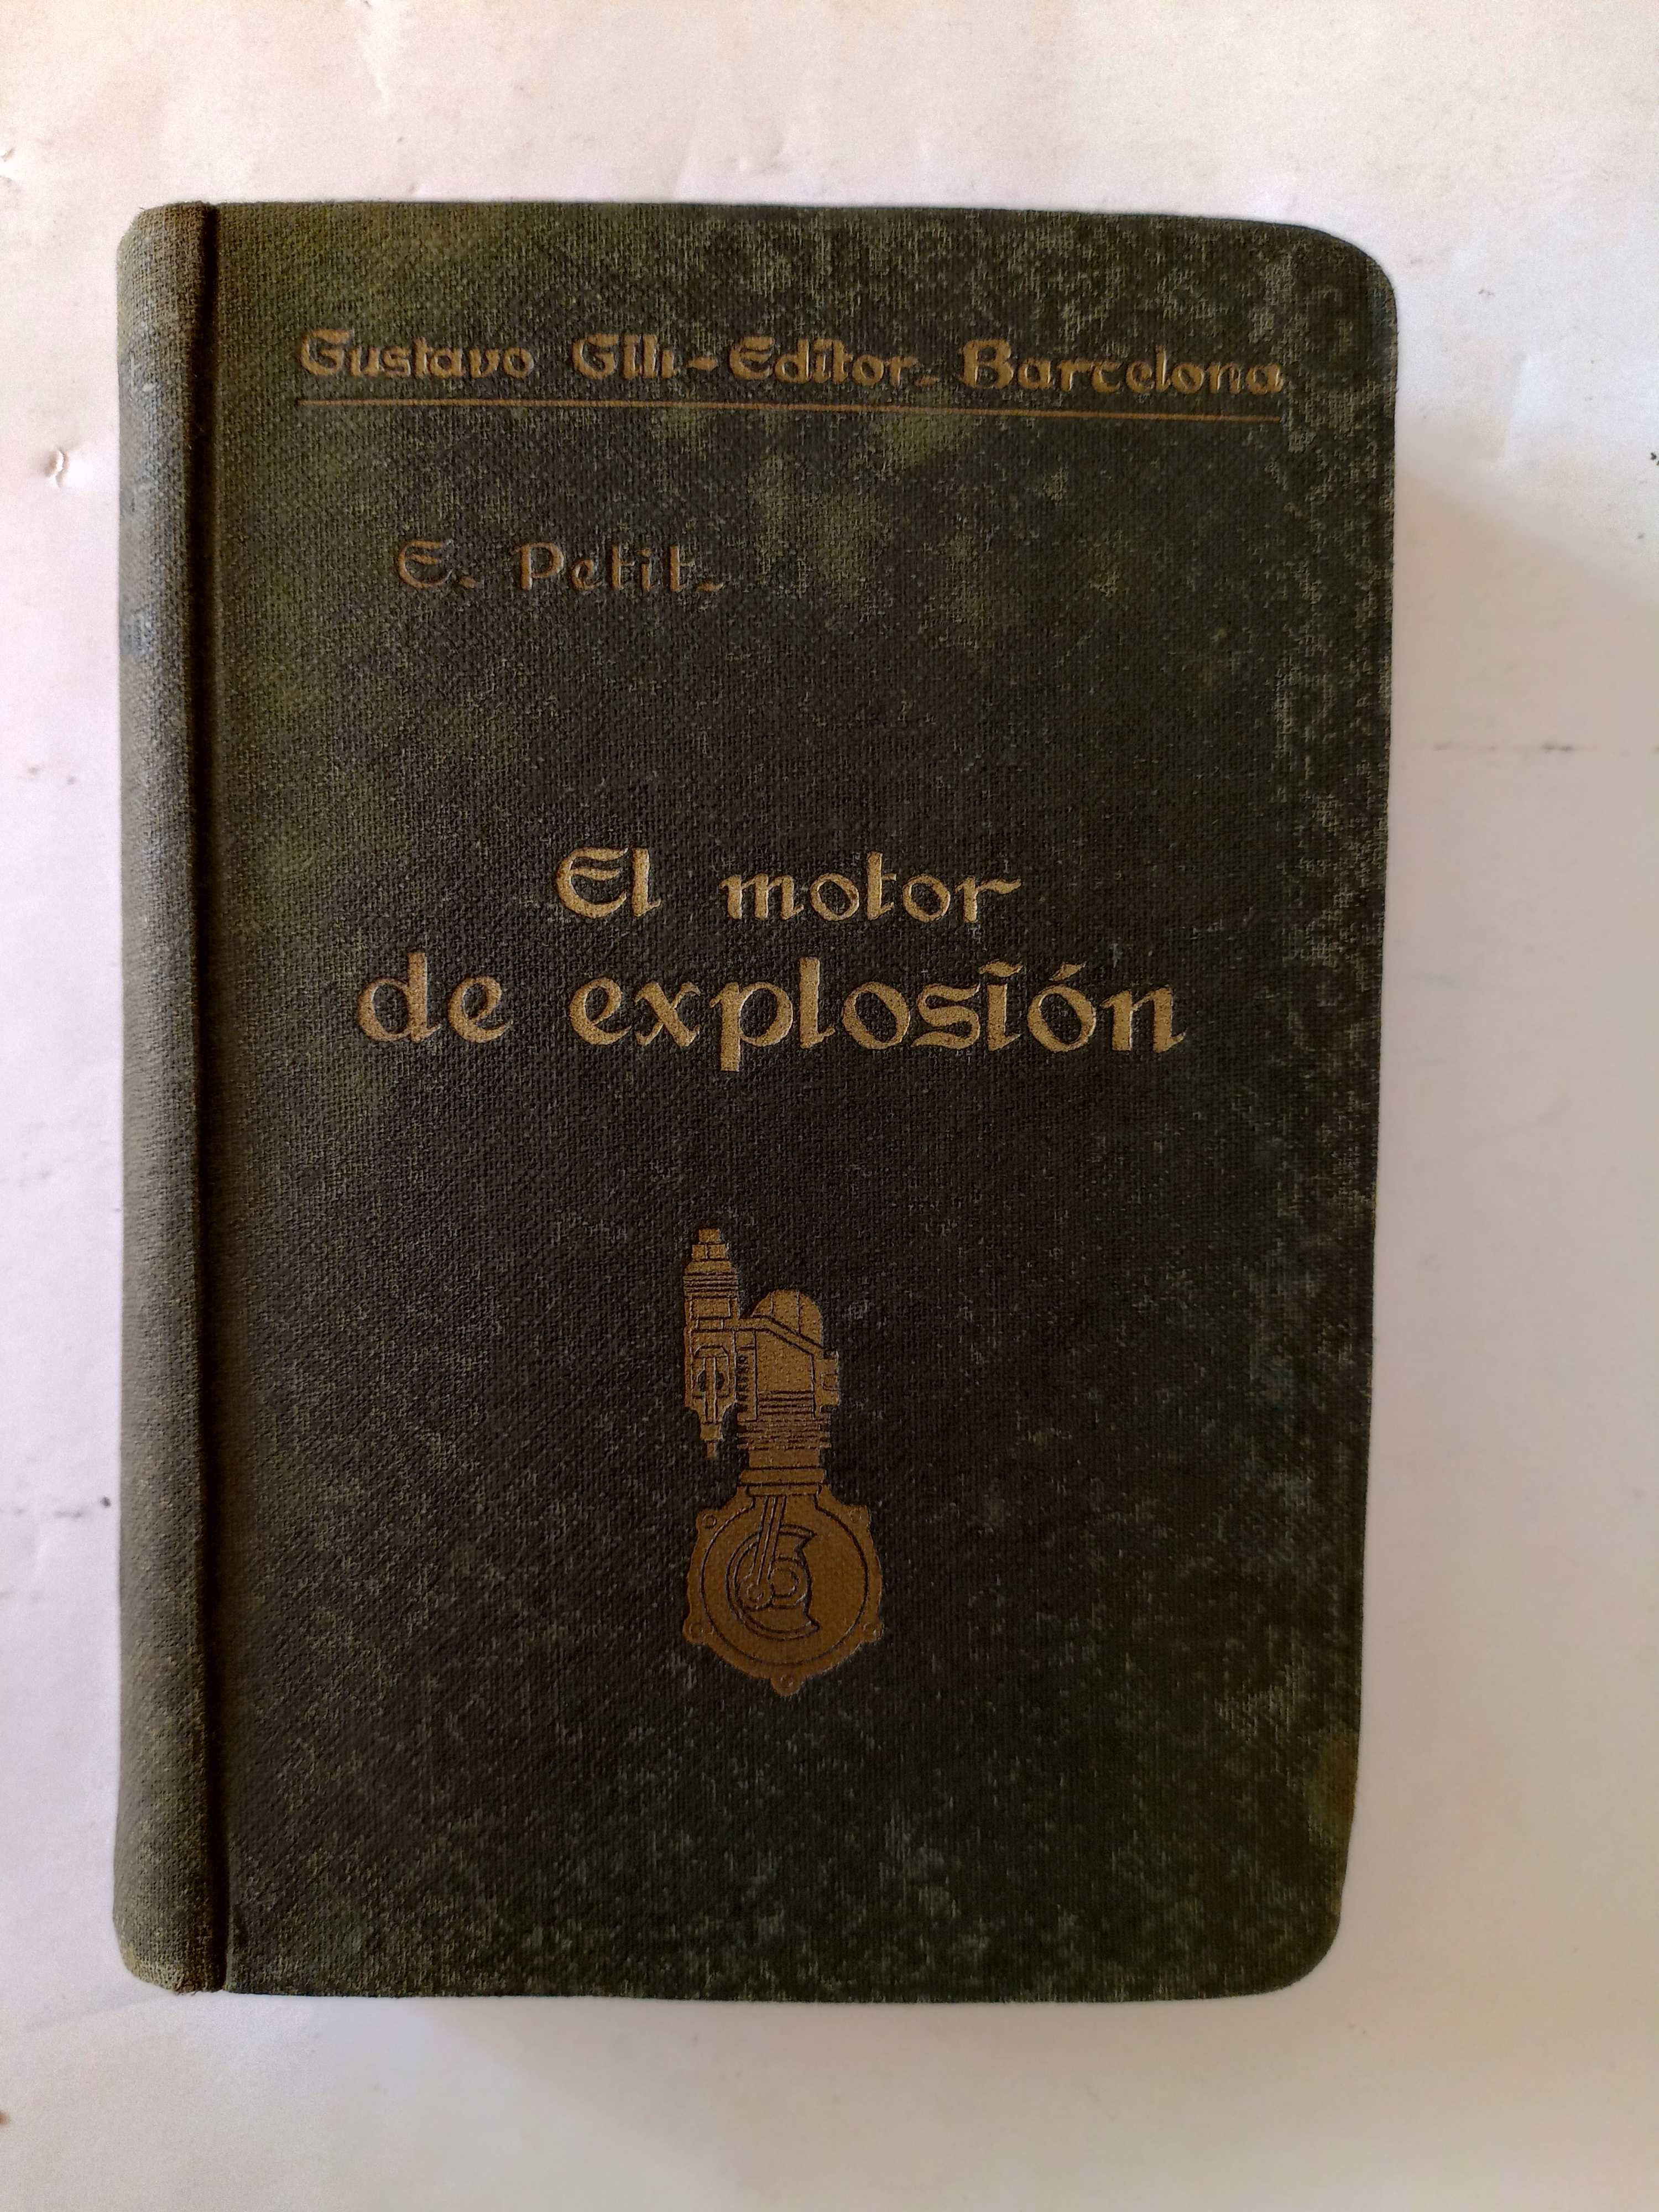 El Motor de Explosión de E. Petit